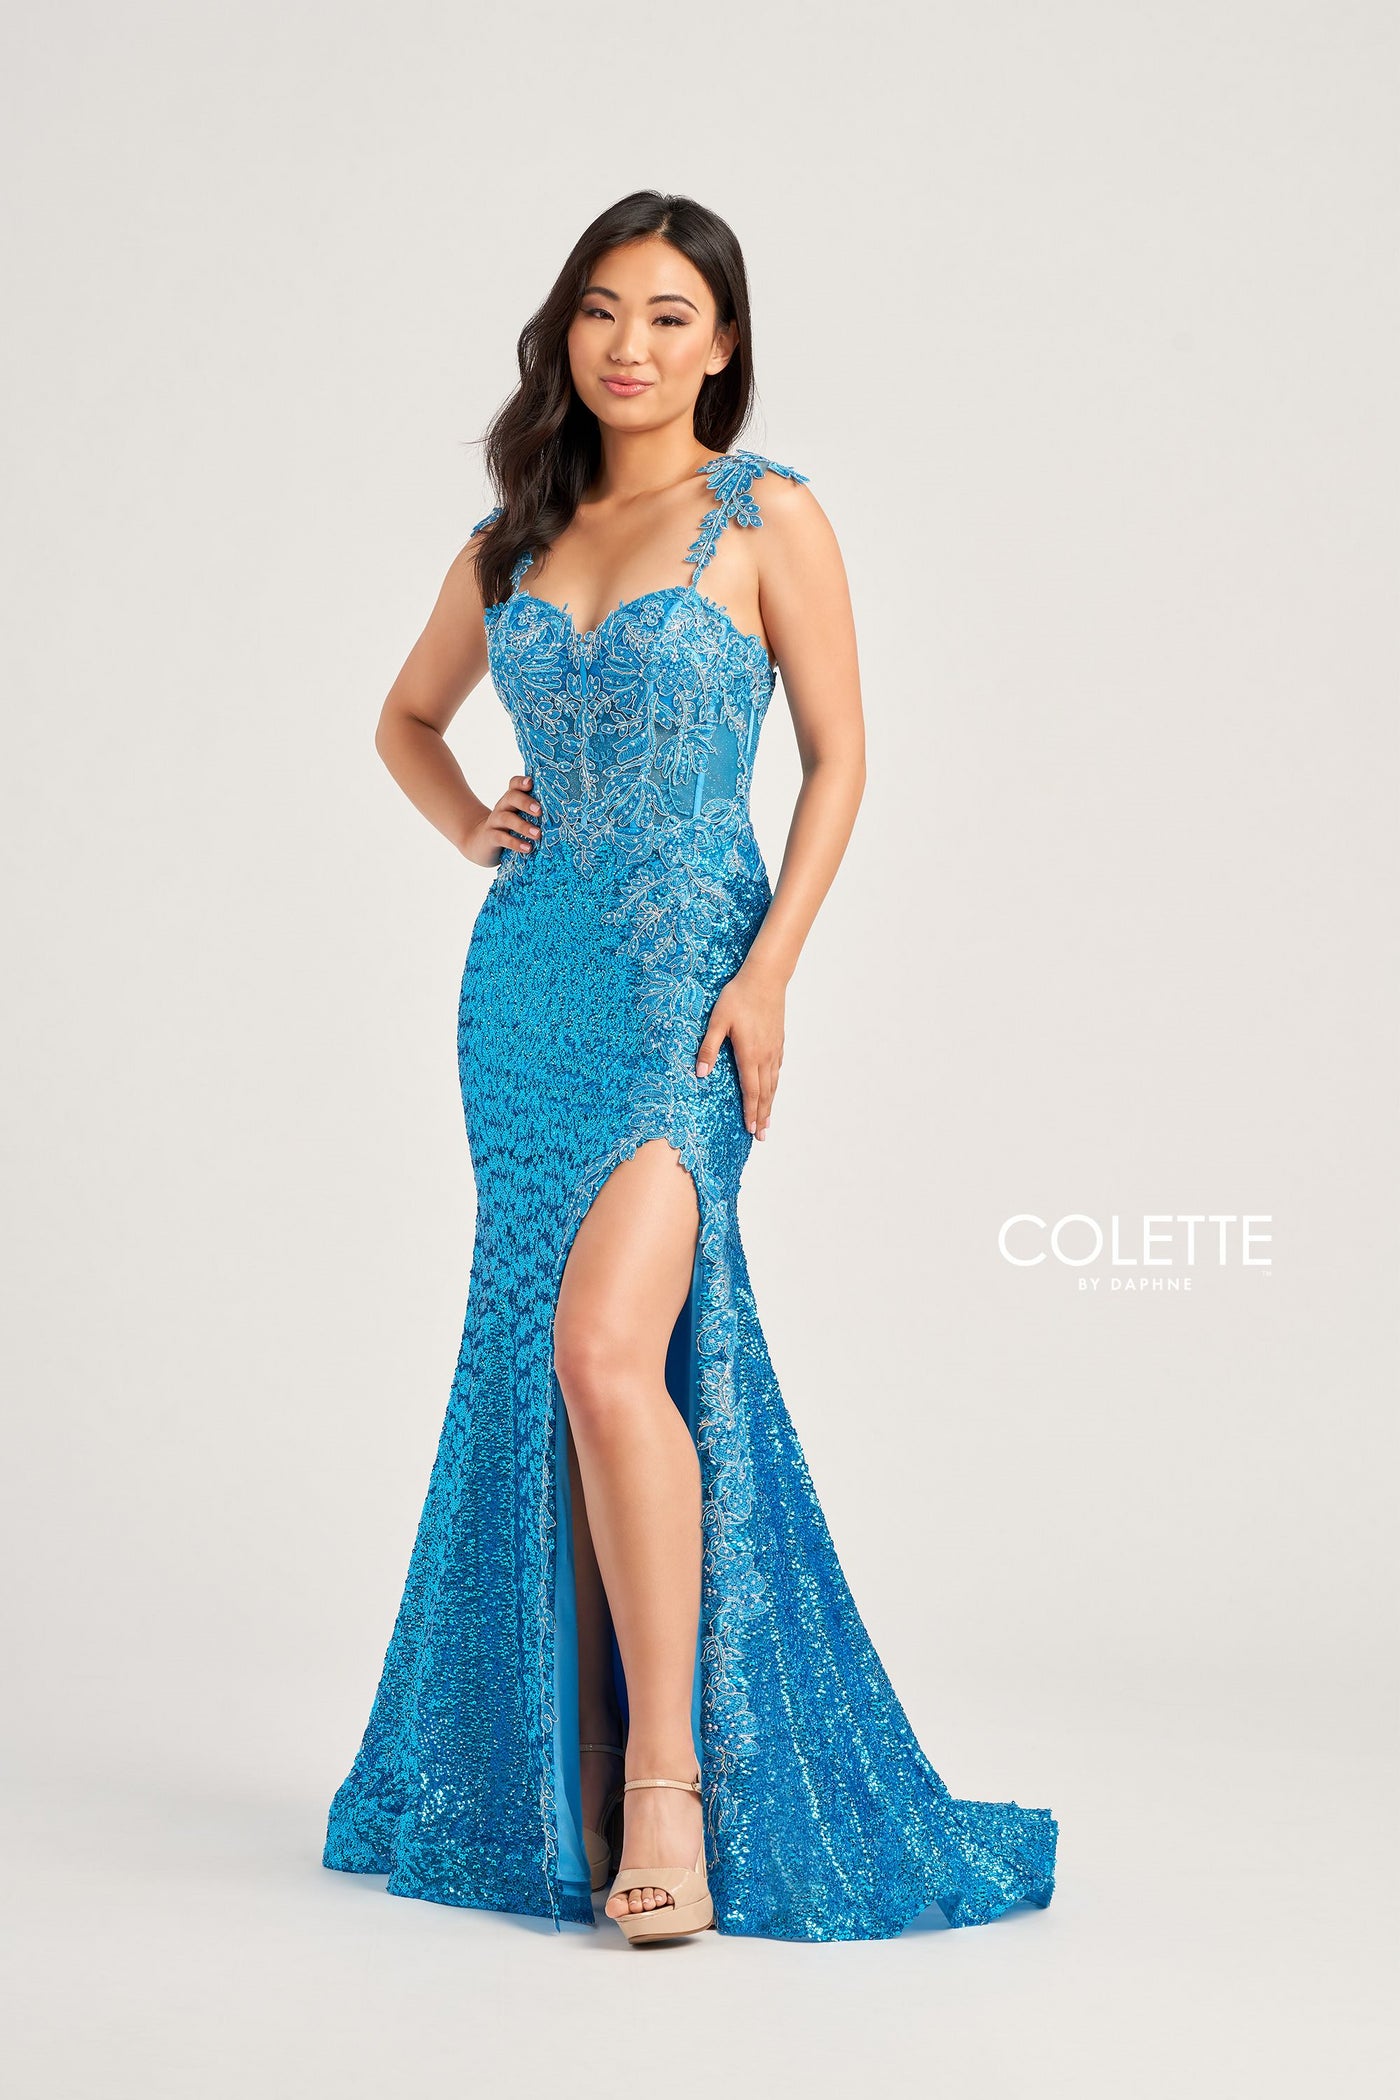 Colette CL5133